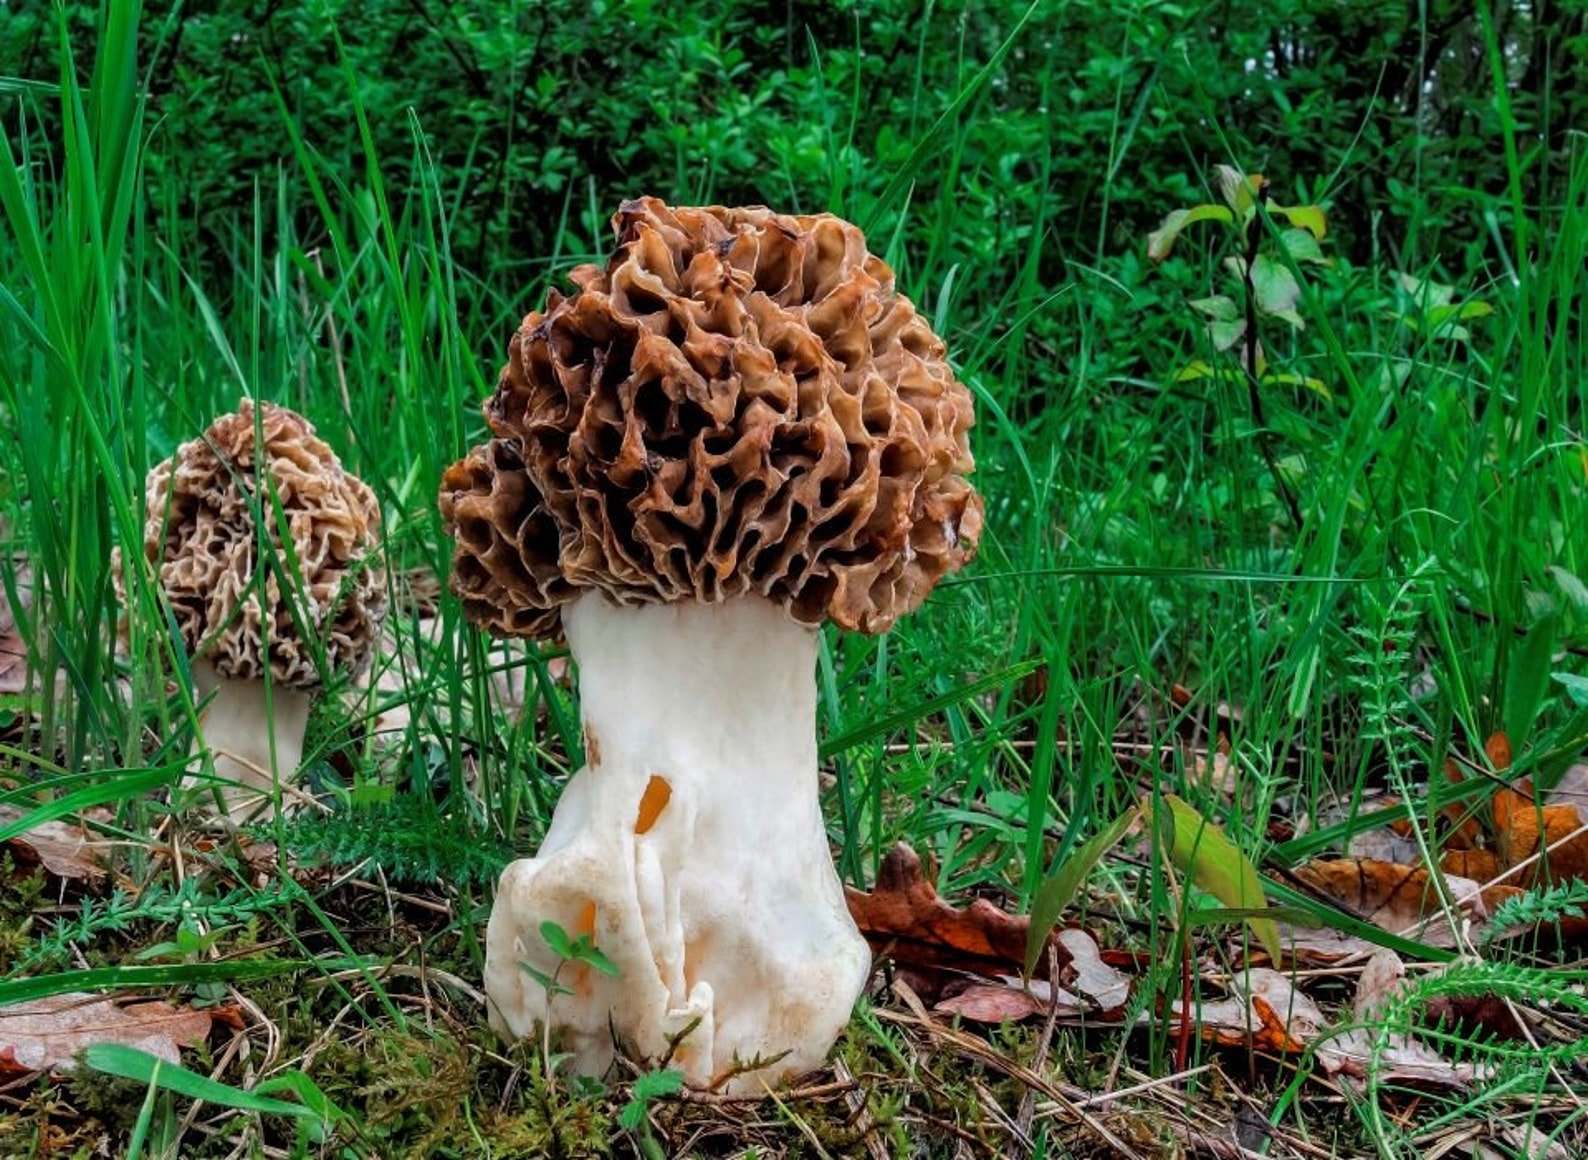 Приличное название сморчка 7 букв. Сморчок толстоногий гриб. Сумчатые грибы сморчки. Аскомицеты сморчки. Сморчок толстоногий (Morchella crassipes).